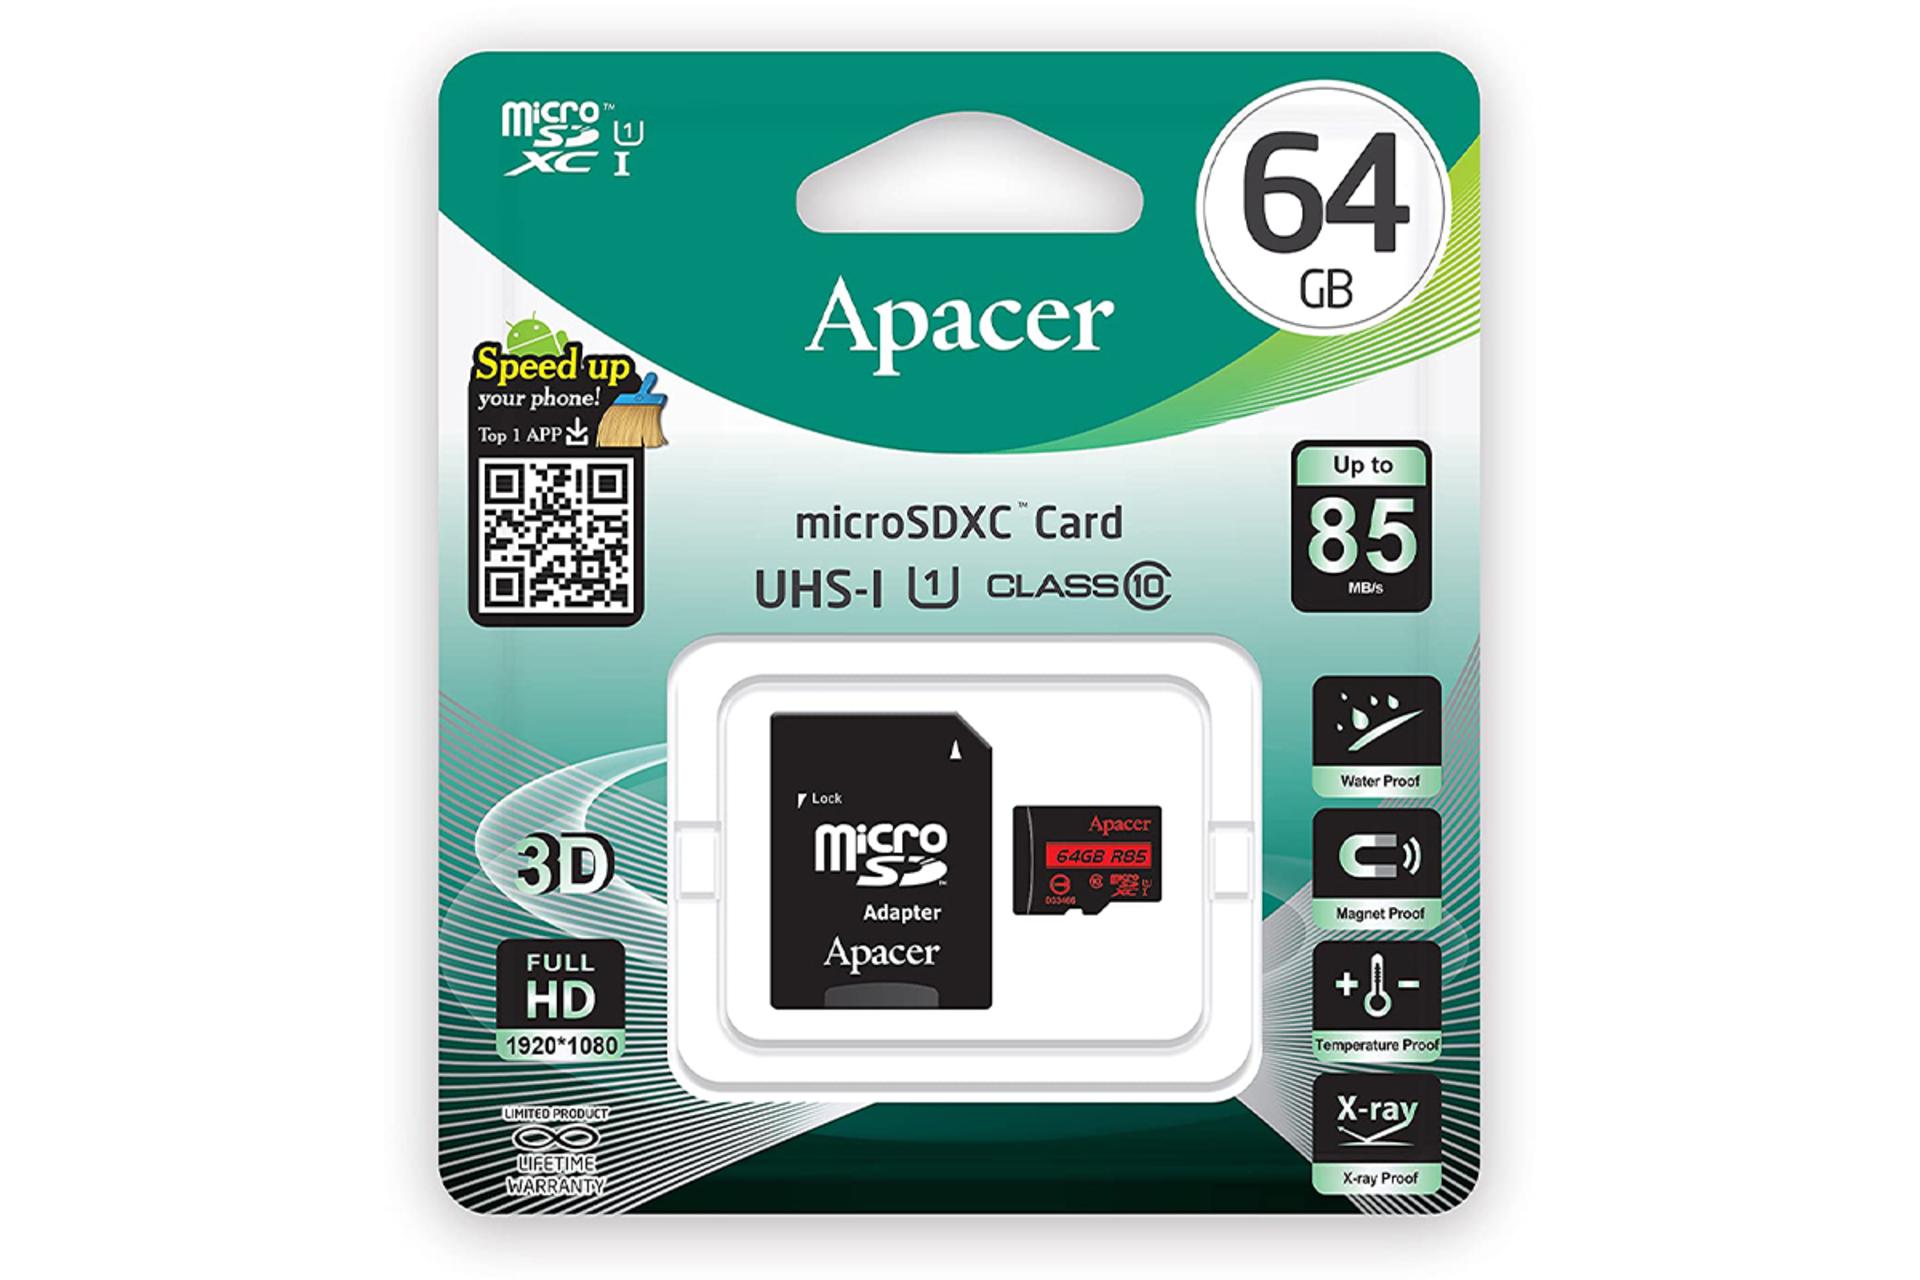 اپیسر microSDXC با ظرفیت 64 گیگابایت کلاس 10 / Apacer microSDXC Class 10 UHS-I U3 64GB